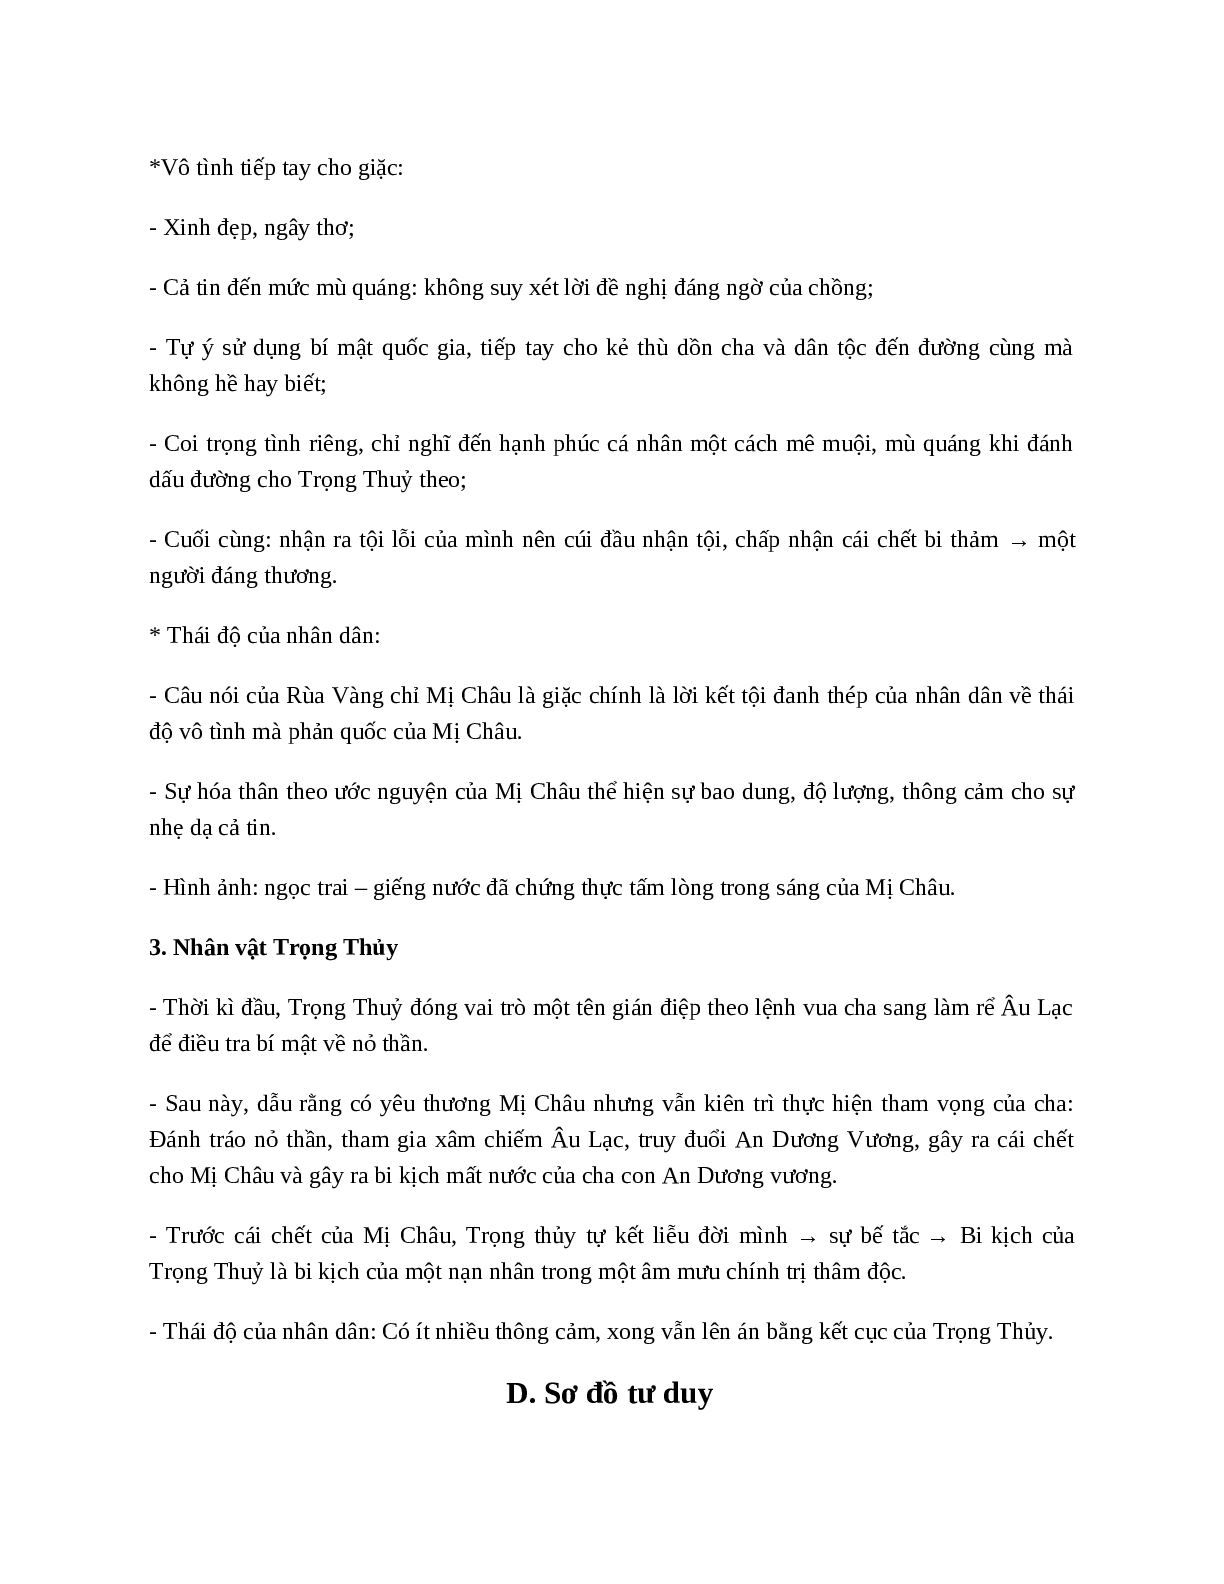 Truyện An Dương Vương và Mị Châu - Trọng Thủy - Tác giả tác phẩm - Ngữ văn lớp 10 (trang 5)